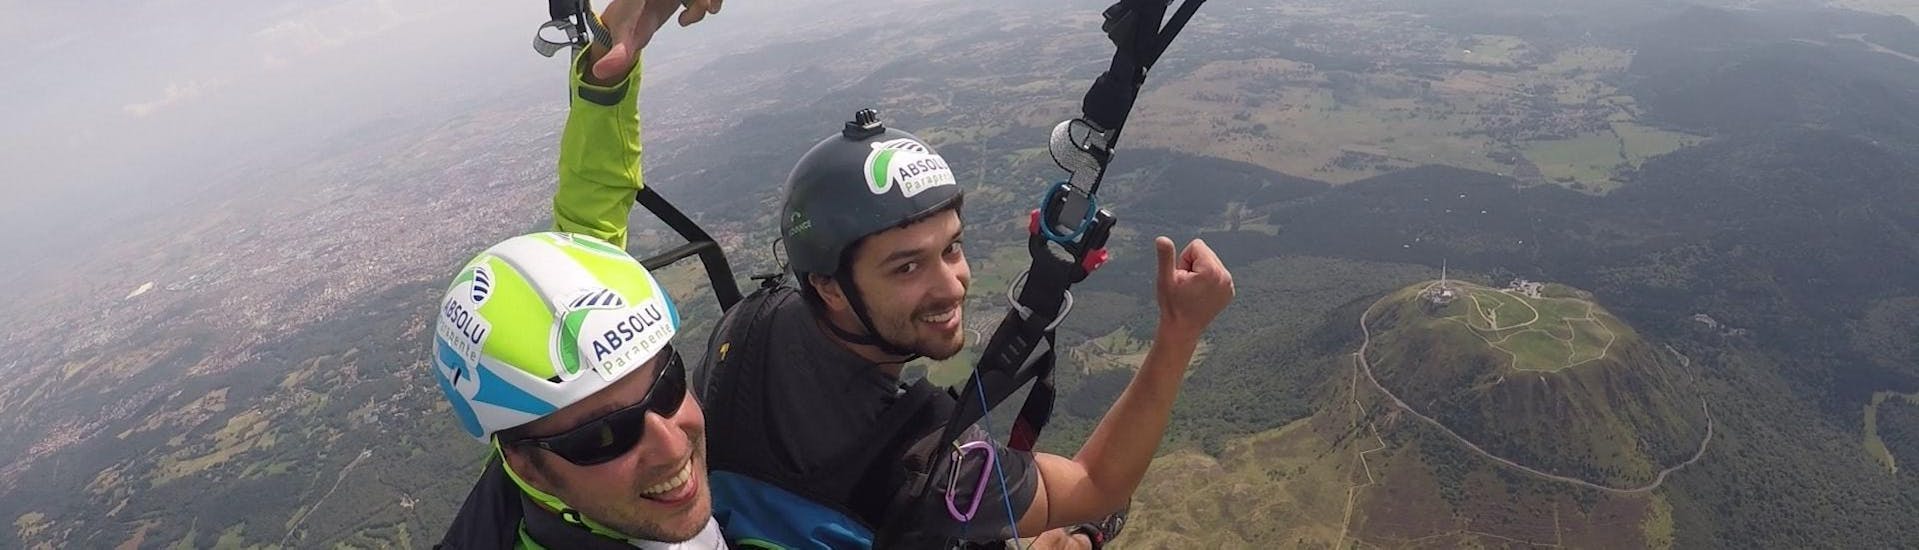 Un participant est ravi de voler avec son pilote de parapente d'Absolu Parapente au-dessus de paysages de volcans spectaculaires lors de son Vol Parapente Biplace "Découverte" - Puy de Dôme.